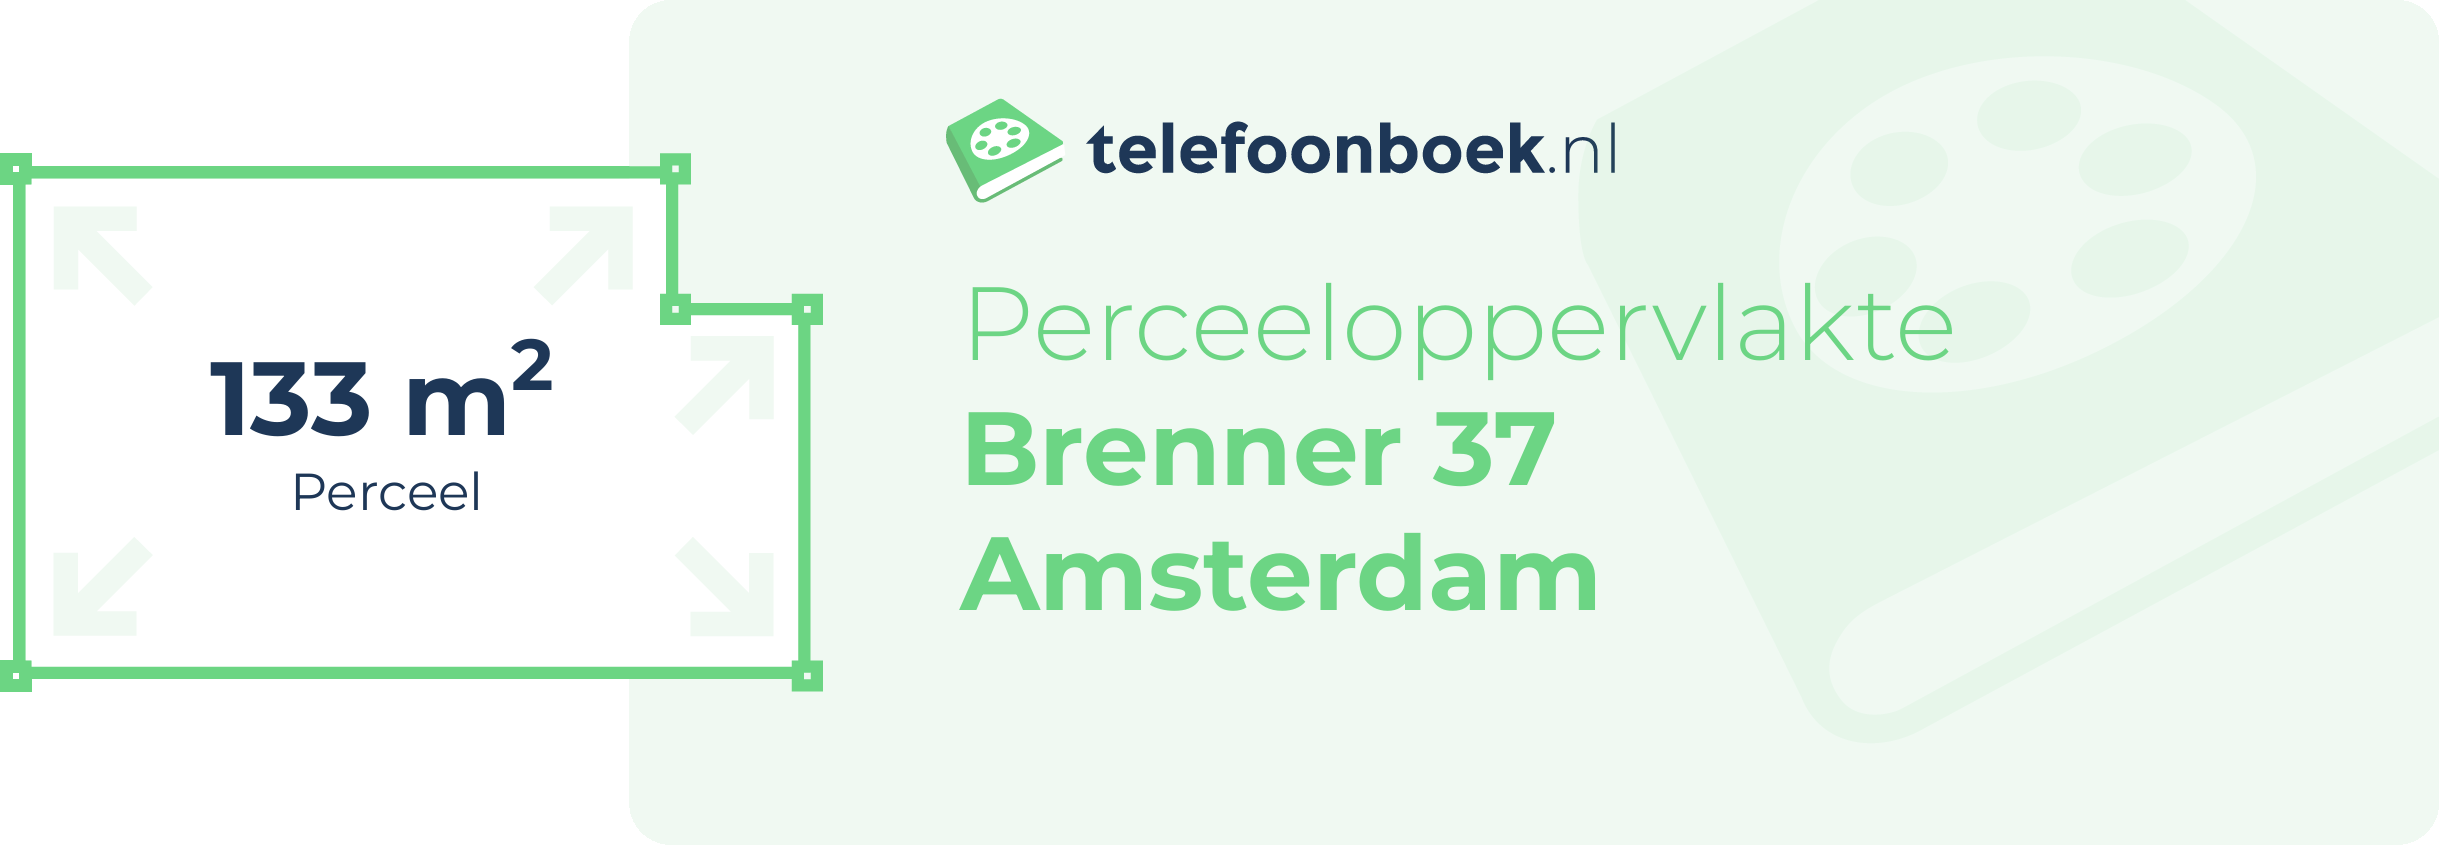 Perceeloppervlakte Brenner 37 Amsterdam